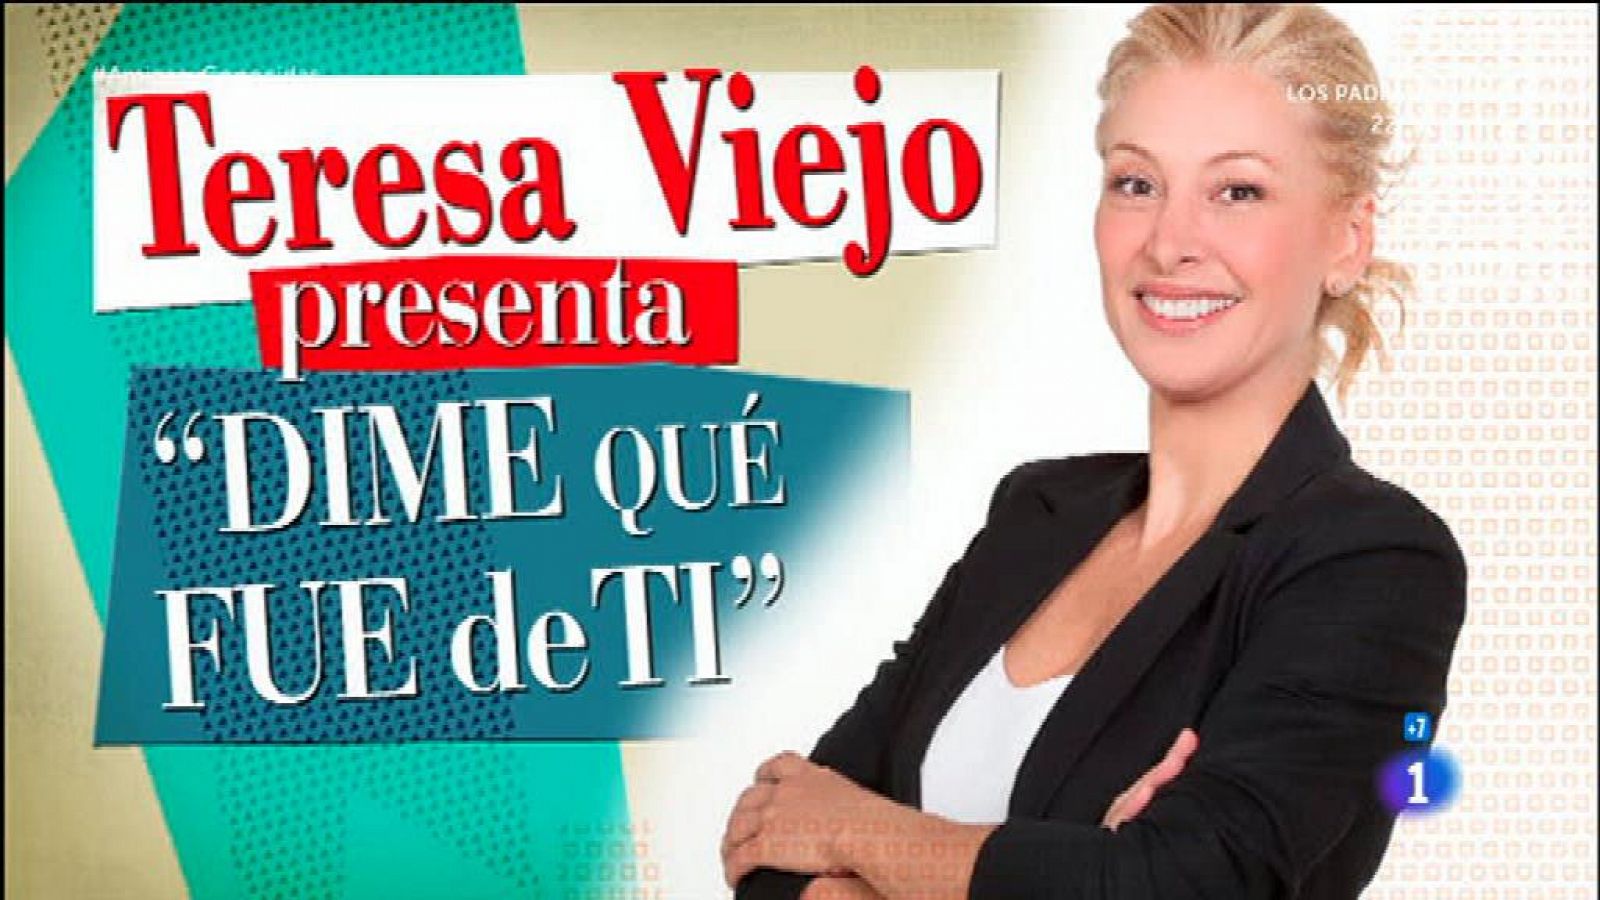 Teresa Viejo estrena 'Dime que fue de tí'